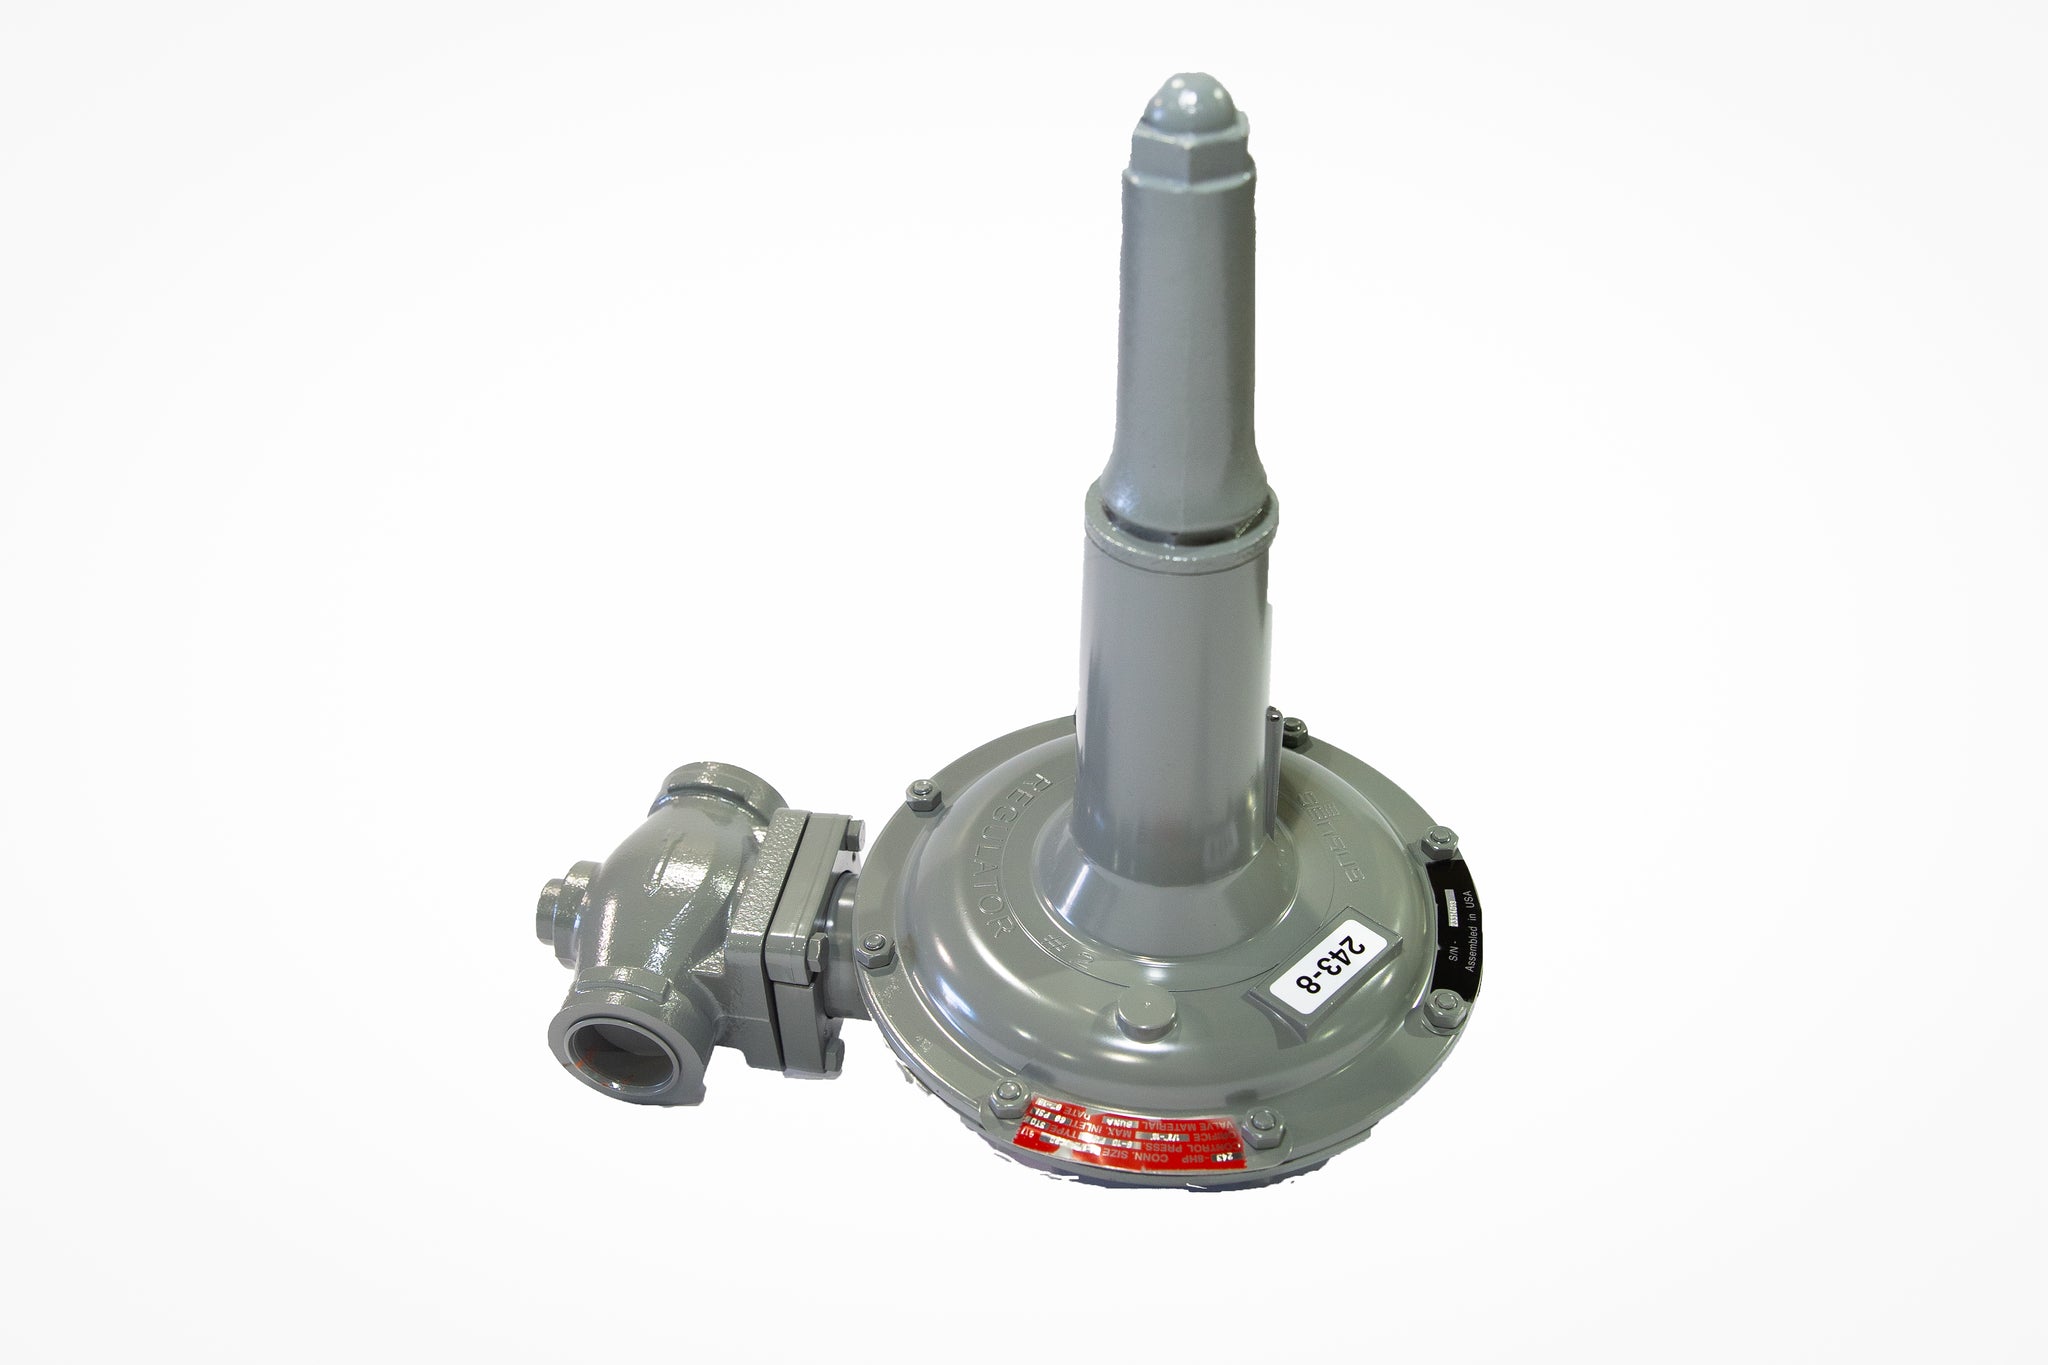 Sensus 243-8HP, 1-1/4"NPT gas regulator w/ 1/4" orifice, Cadmium spring(3-6.5 PSIG)